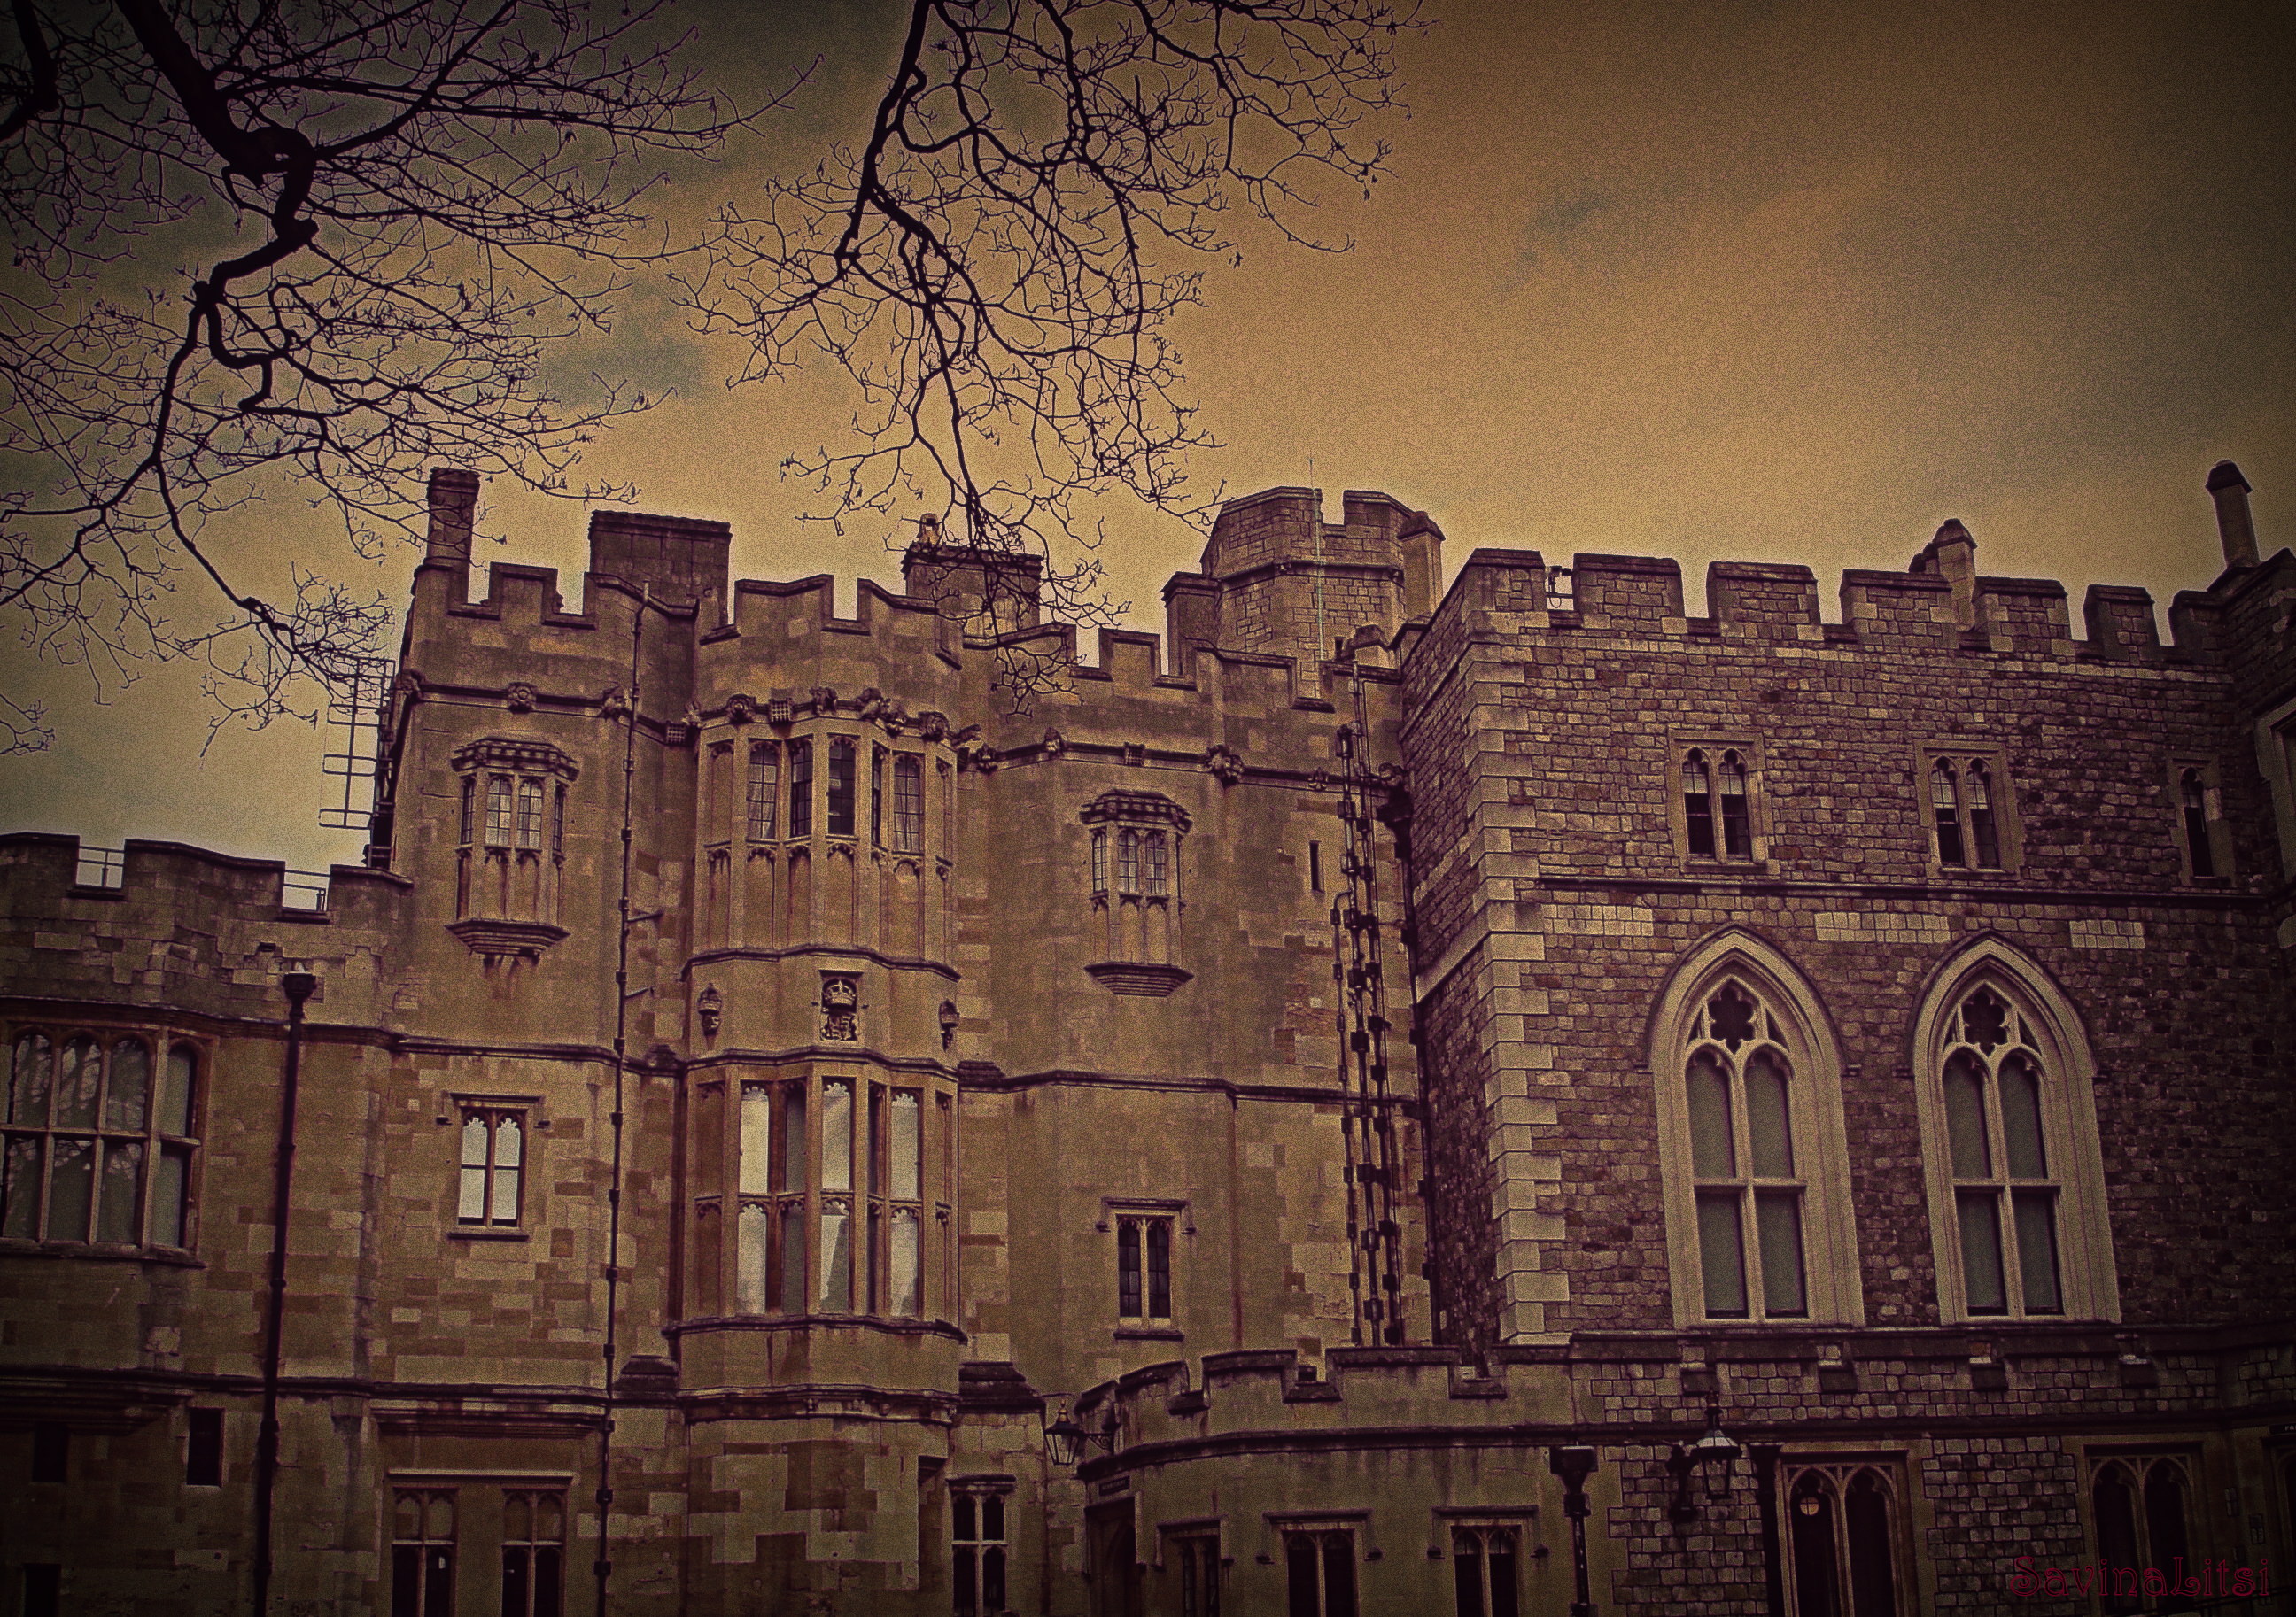 Winsdor Castle